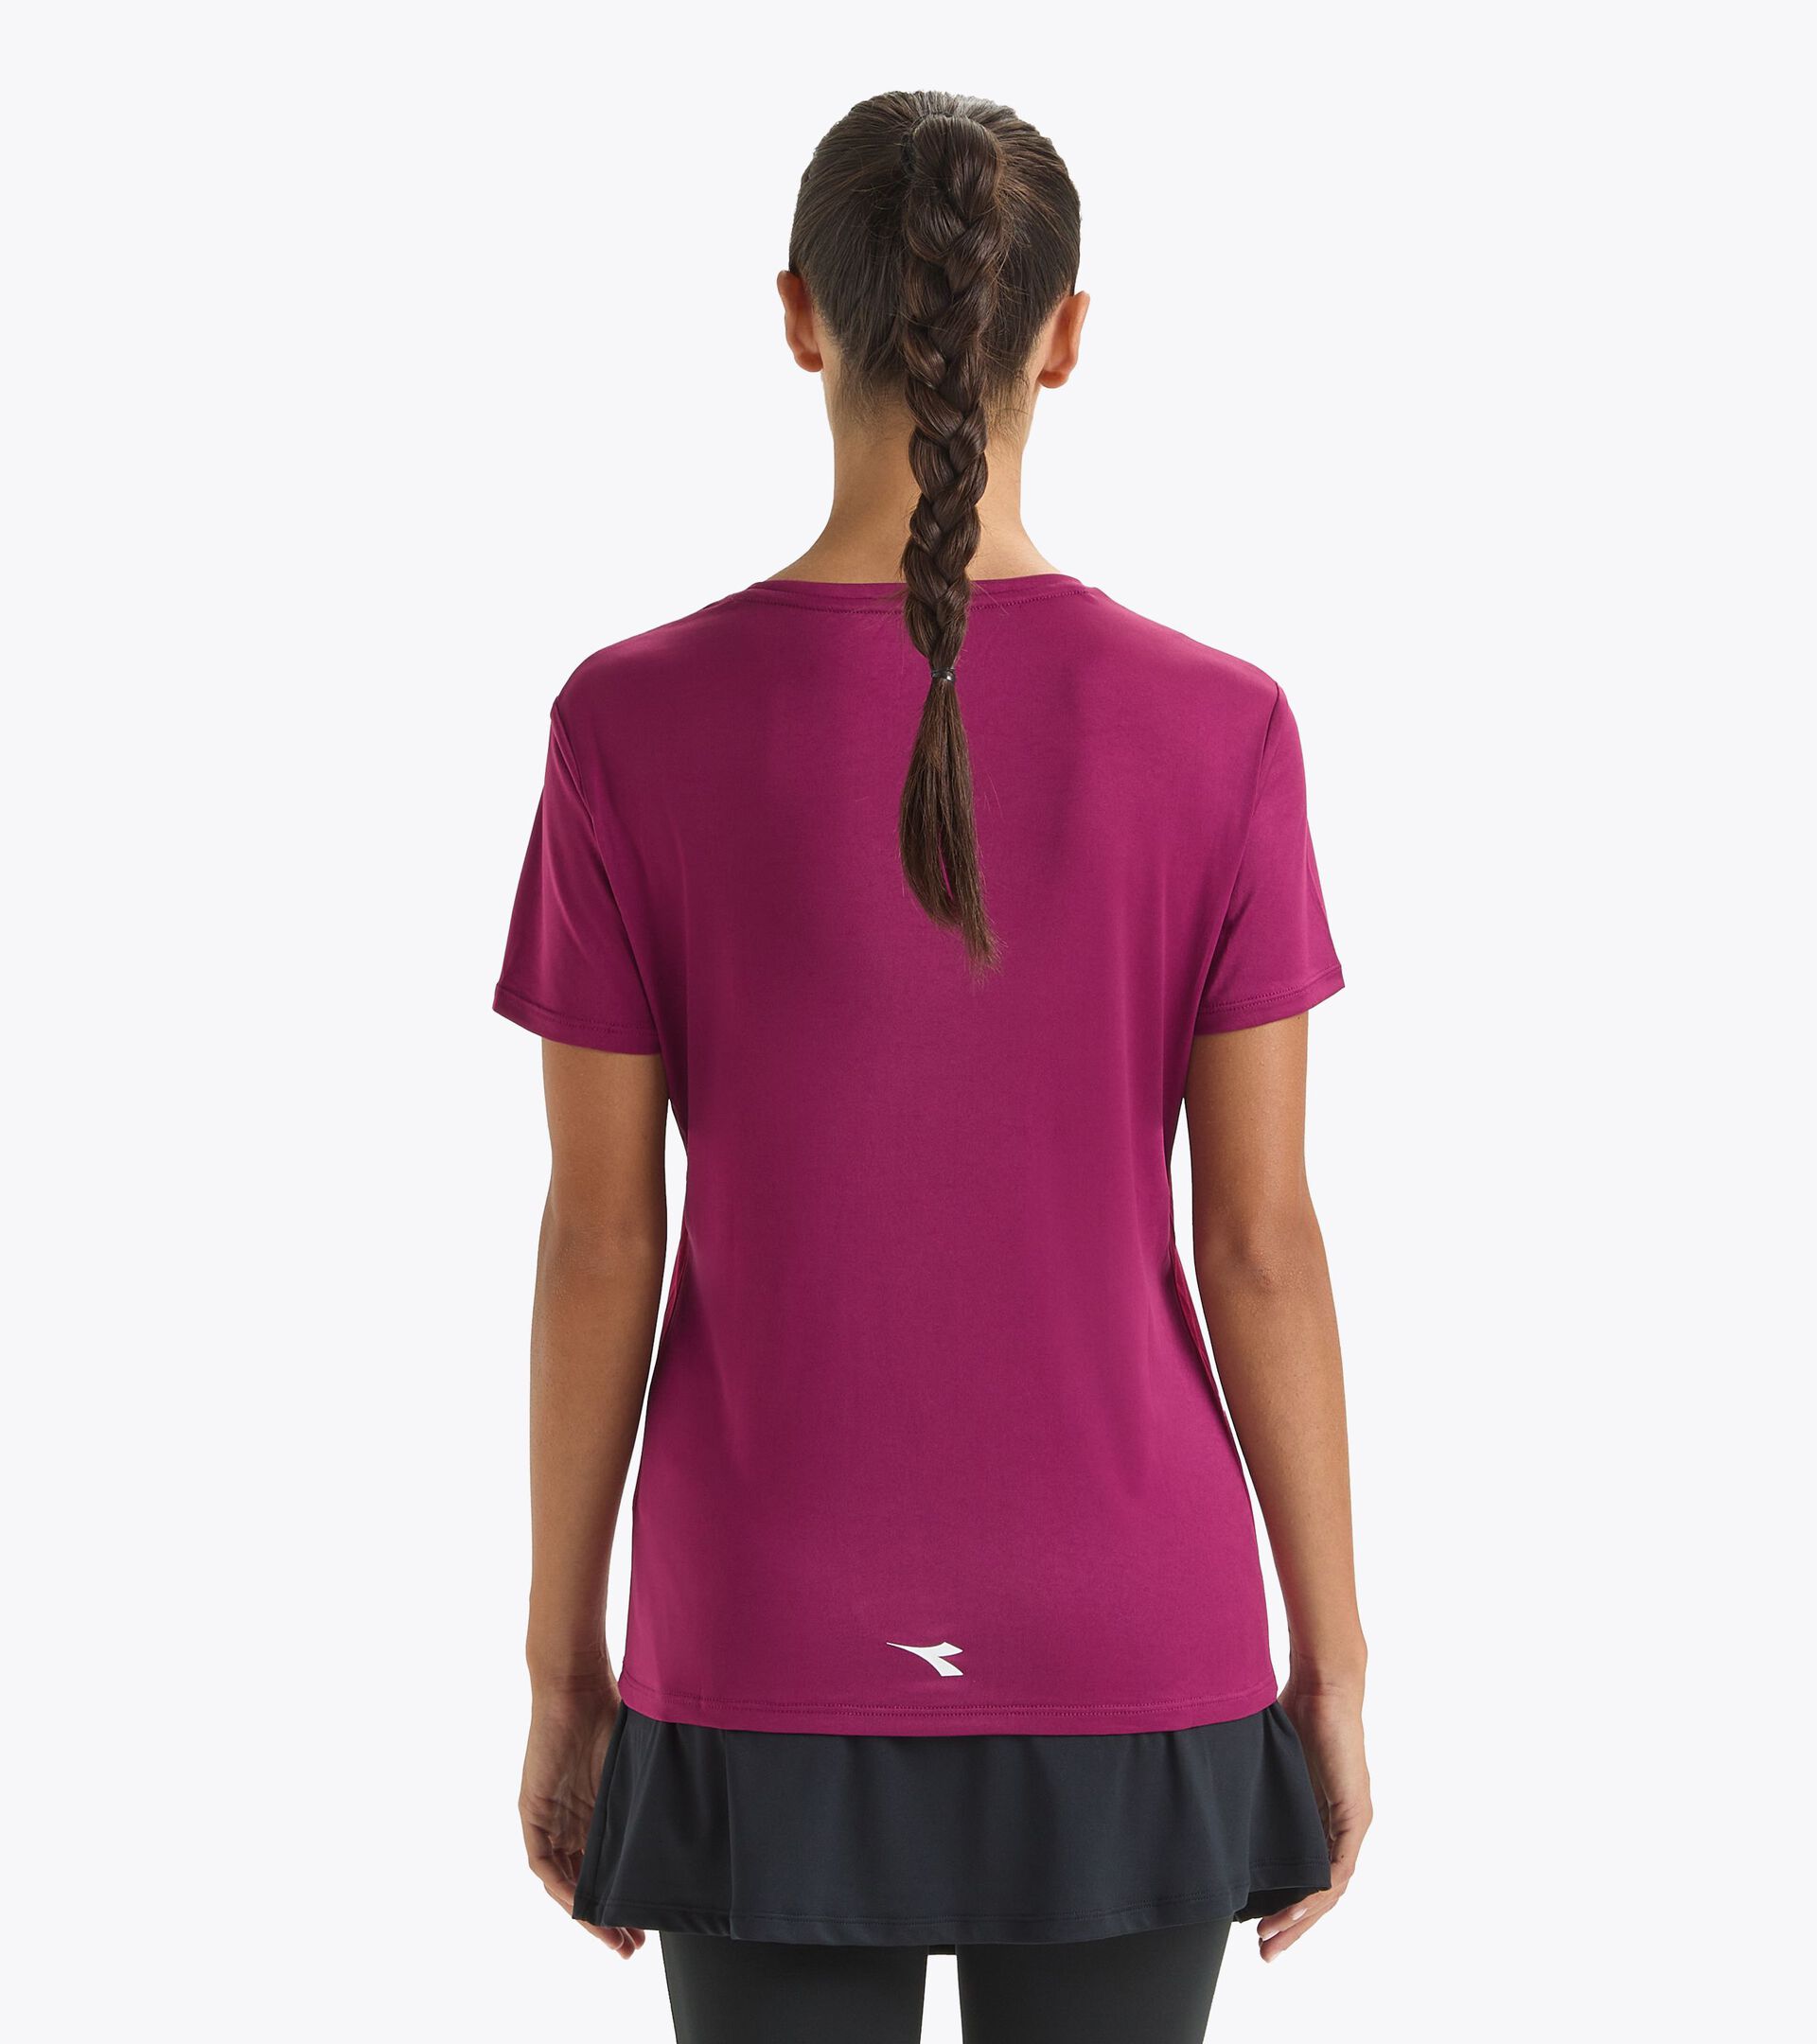 Tennis-T-Shirt - Damen L. SS T-SHIRT BOYSENBEERE - Diadora